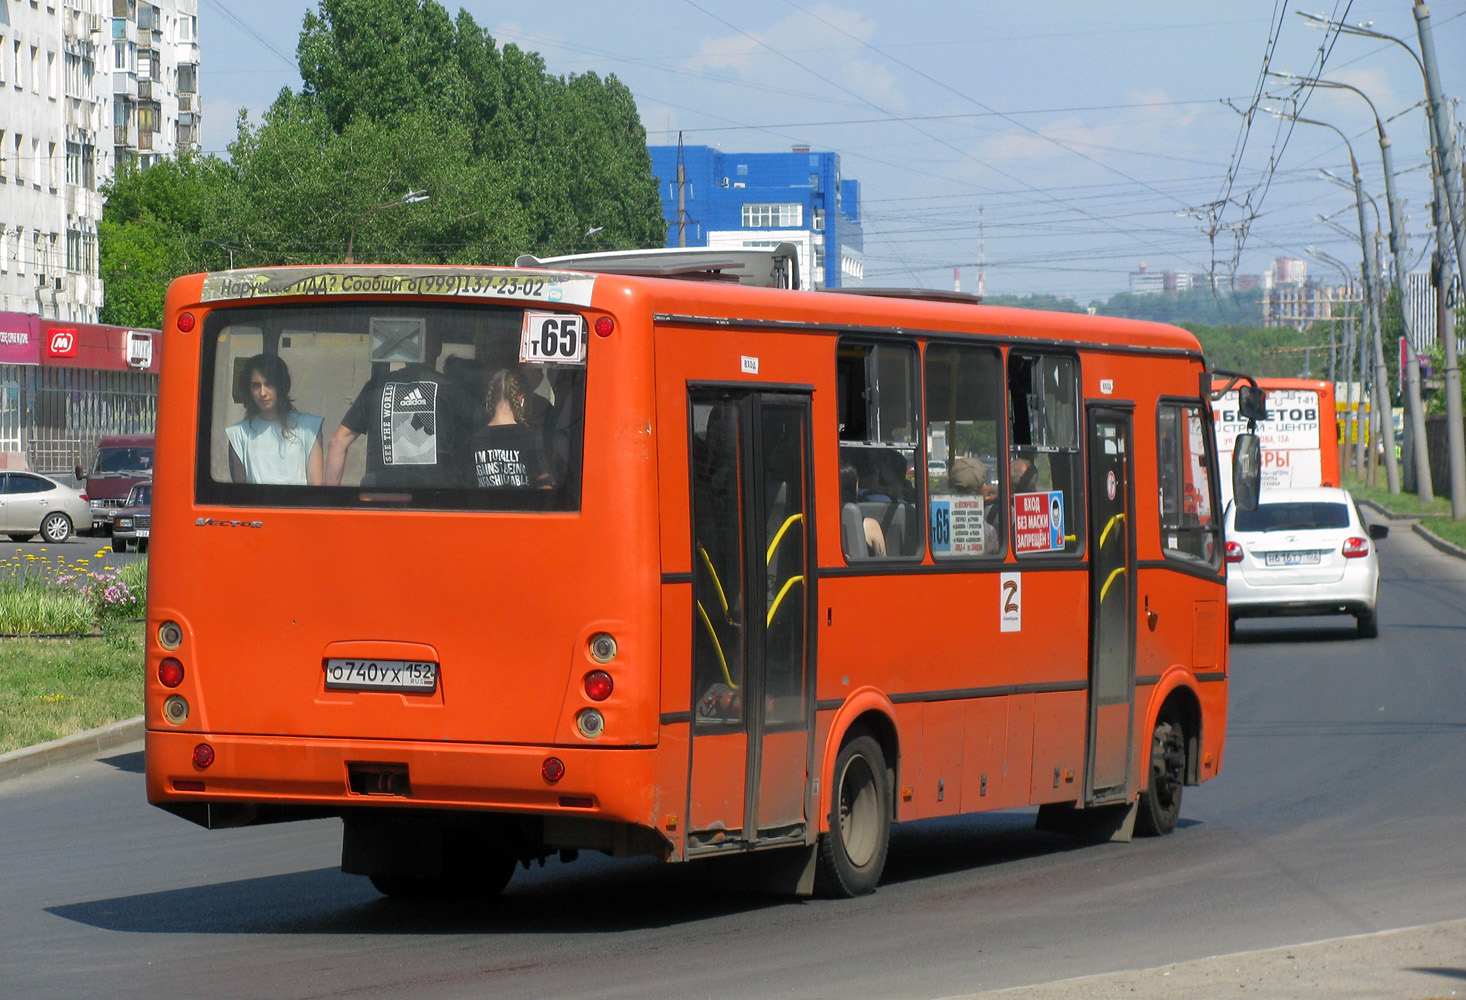 Nizhegorodskaya region, PAZ-320414-05 "Vektor" Nr. О 740 УХ 152